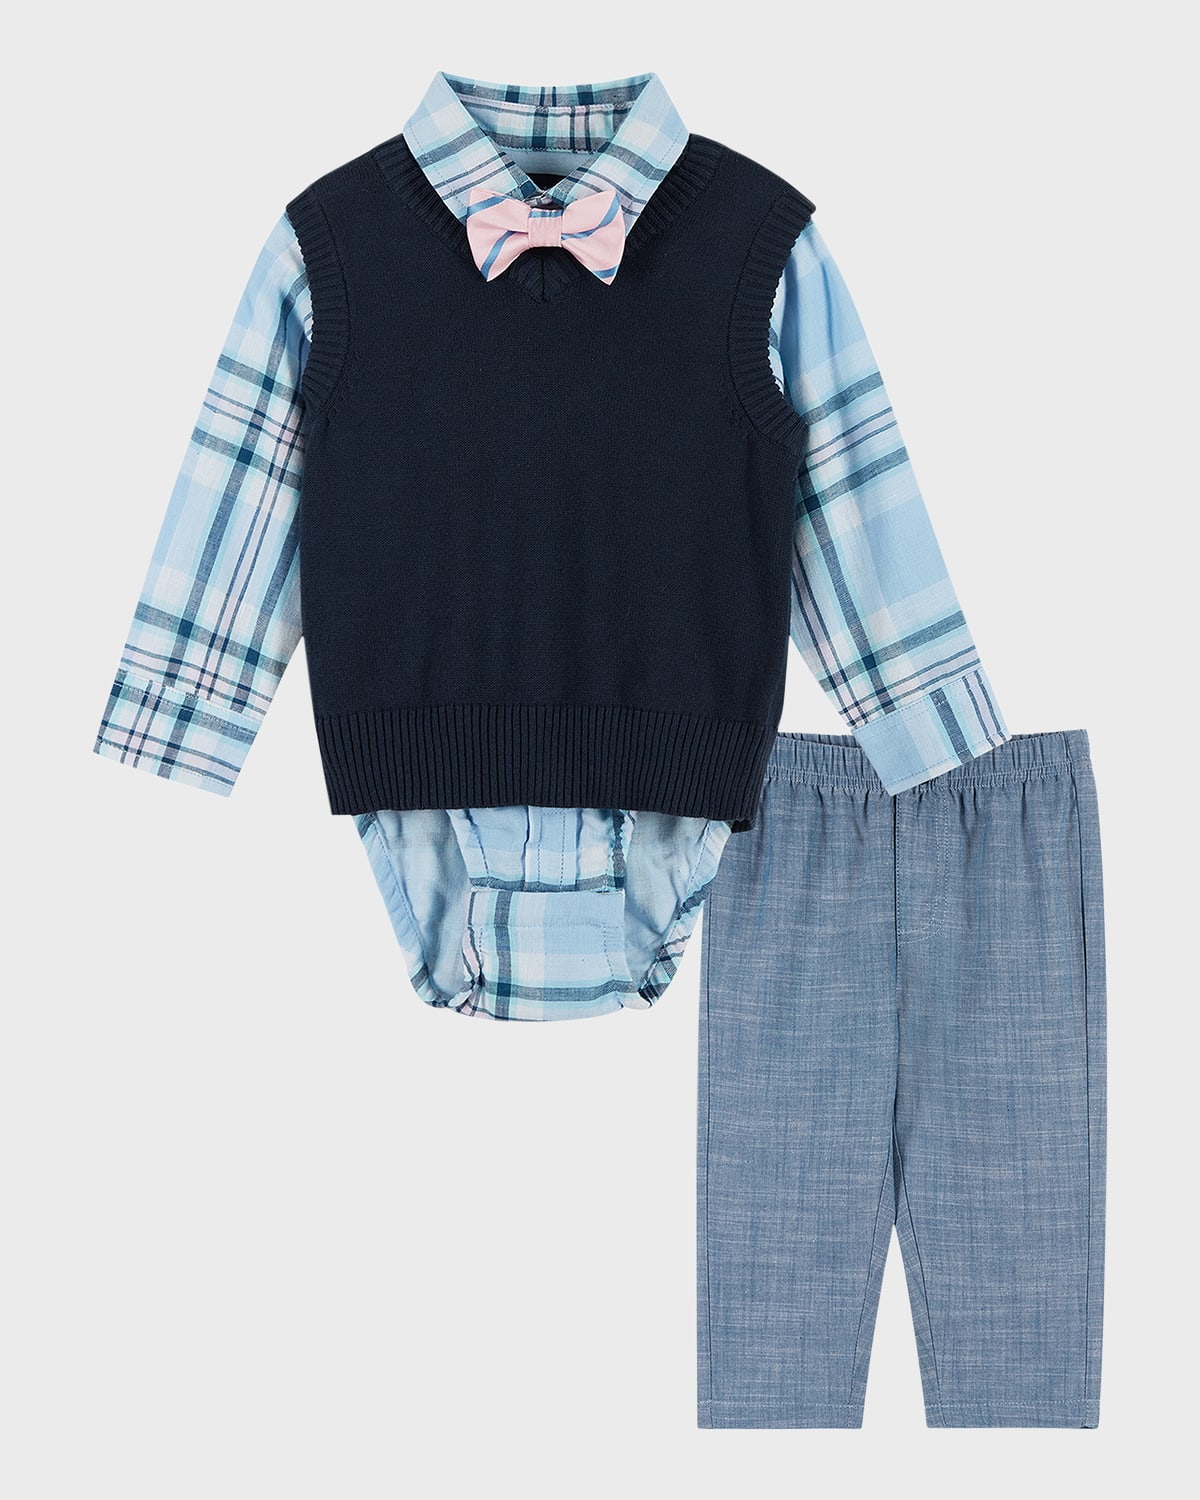 Andy & Evan Kids' Boy's Three-piece Sweater Vest Set In Navy Plaid